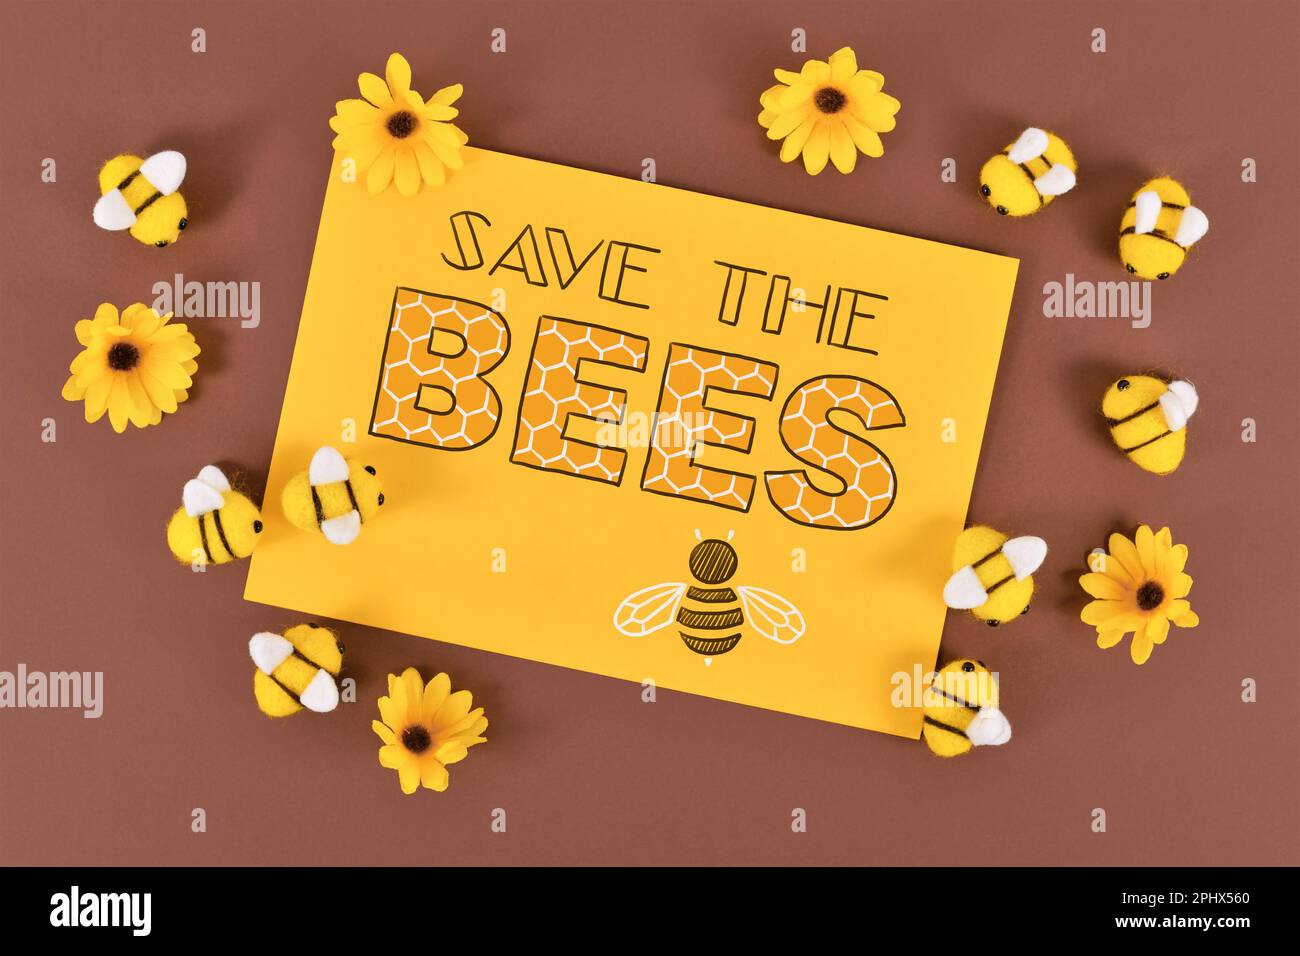 Das Schild „Rettet die Bienen“ umgeben von Filzbienen und gelben Blumen Stockfoto